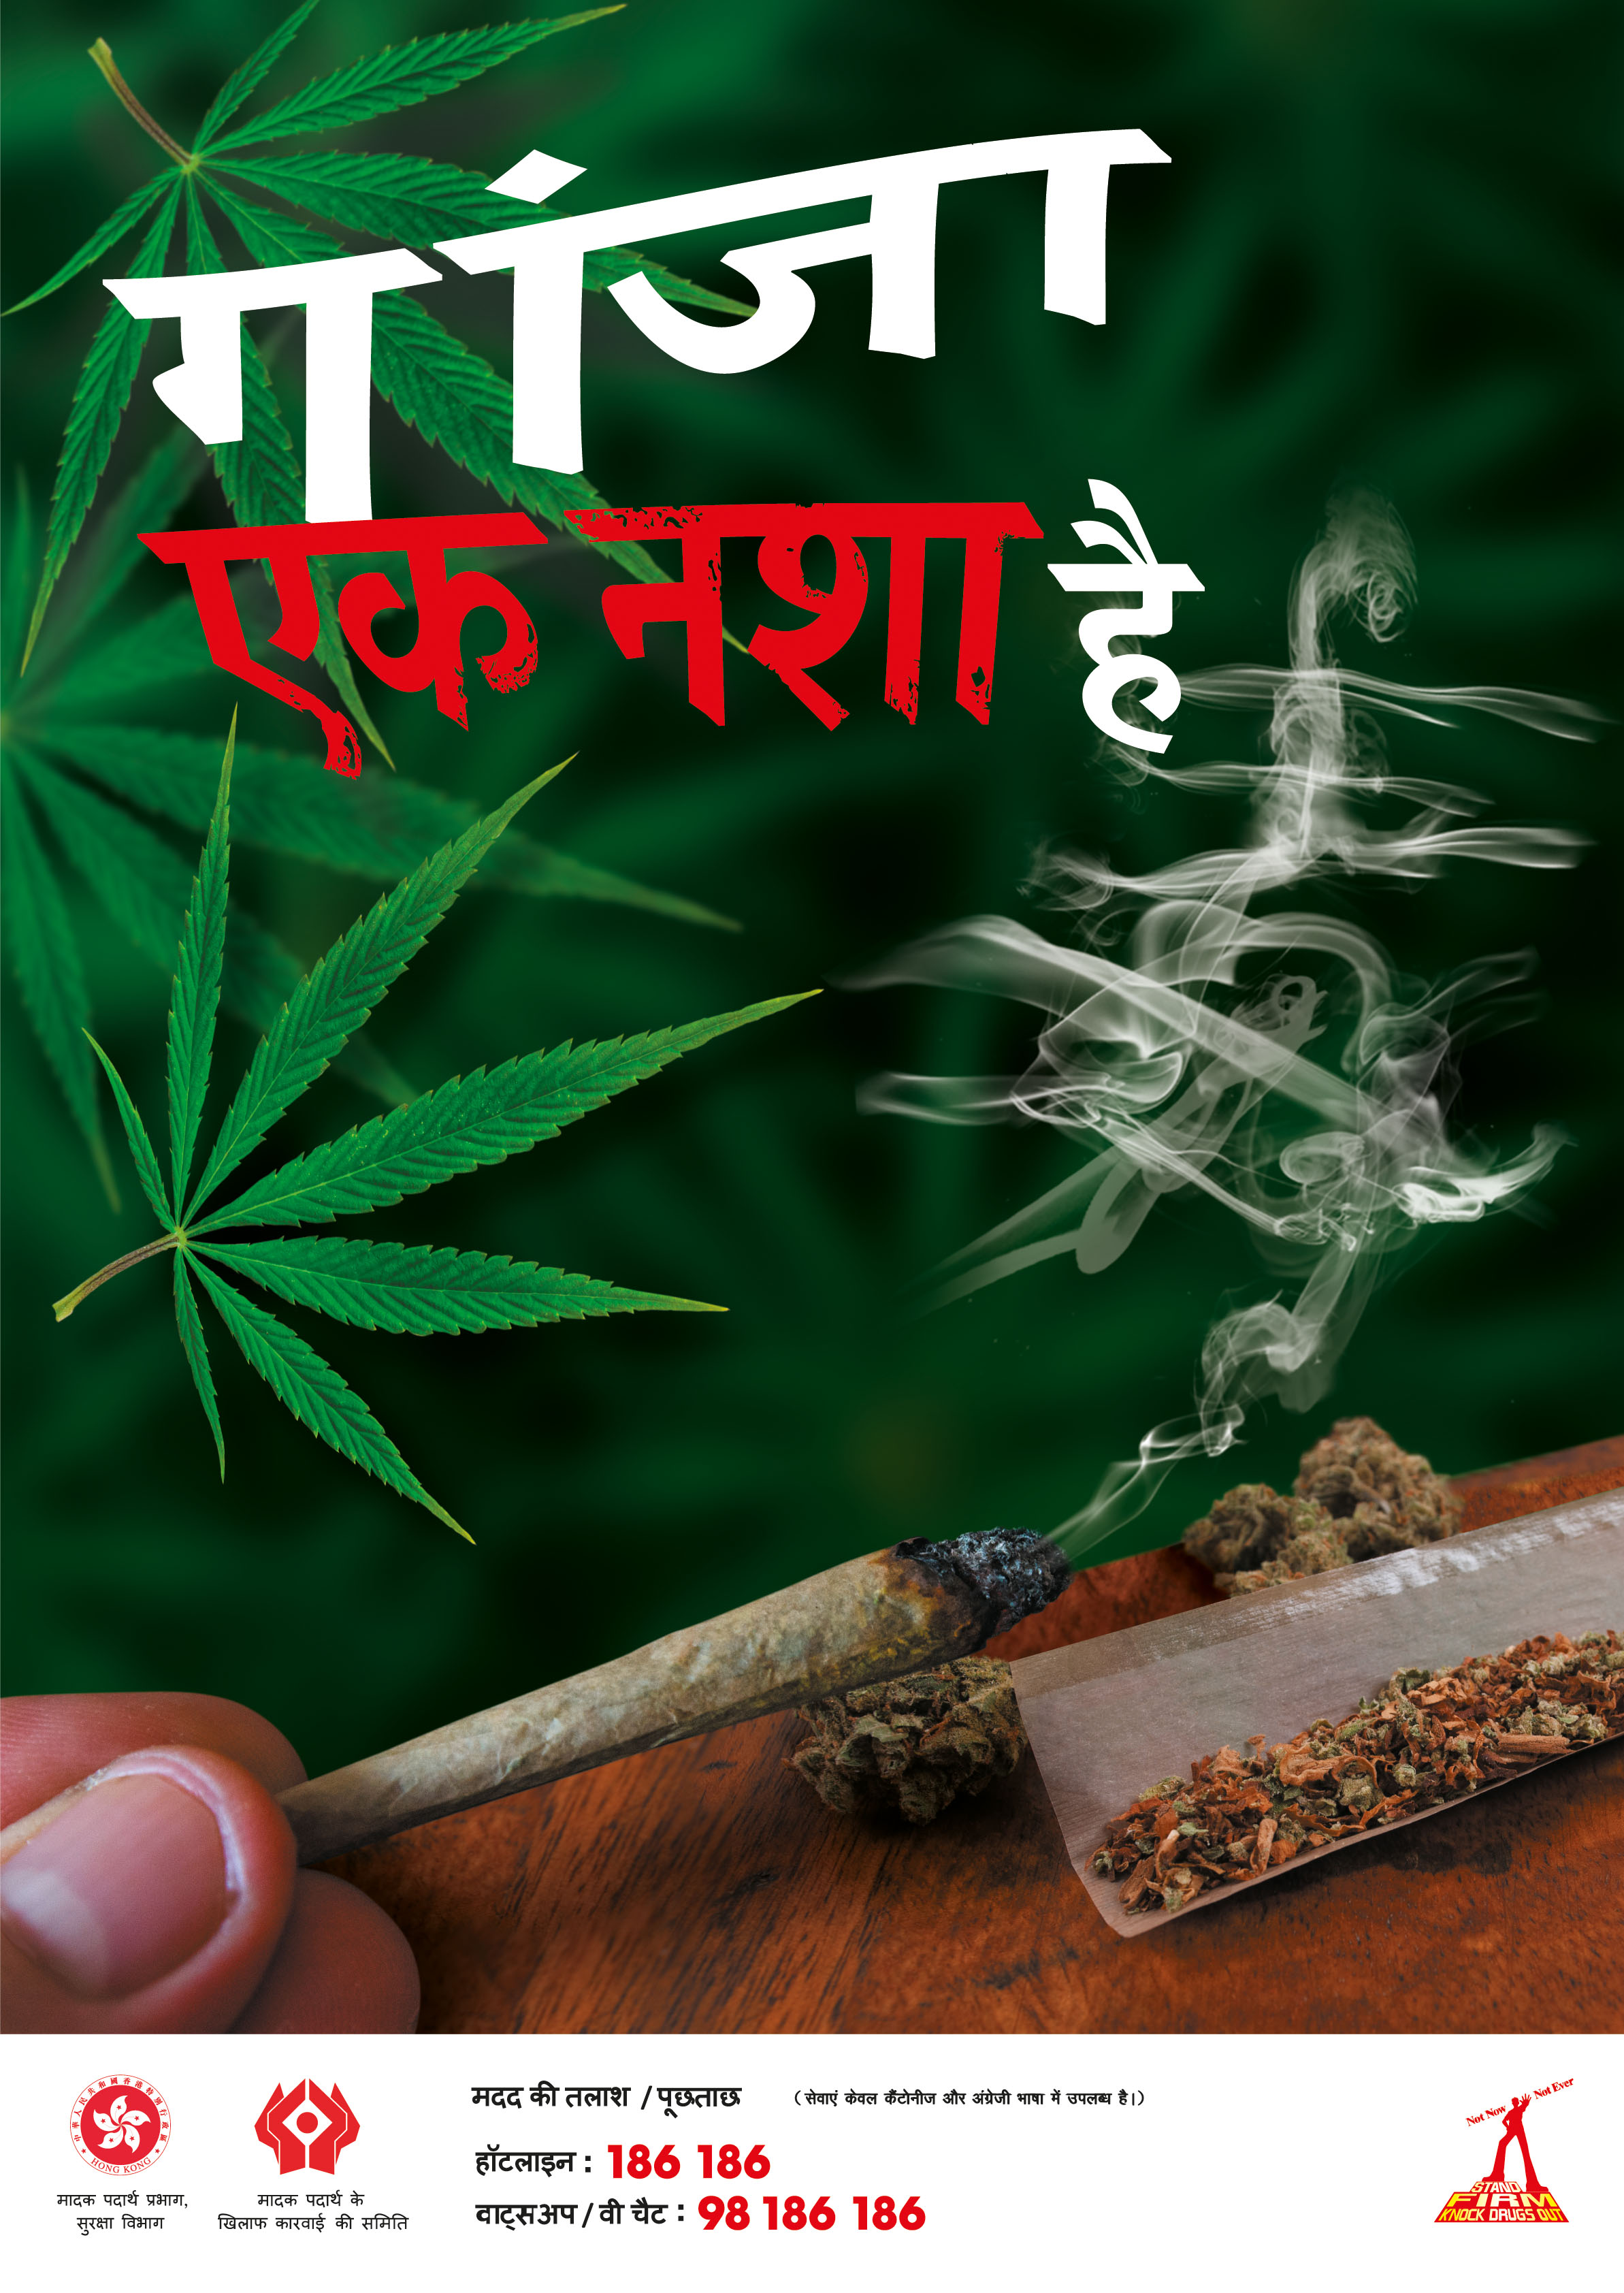 禁毒海报「大麻係毒品 」－ 印度文版本